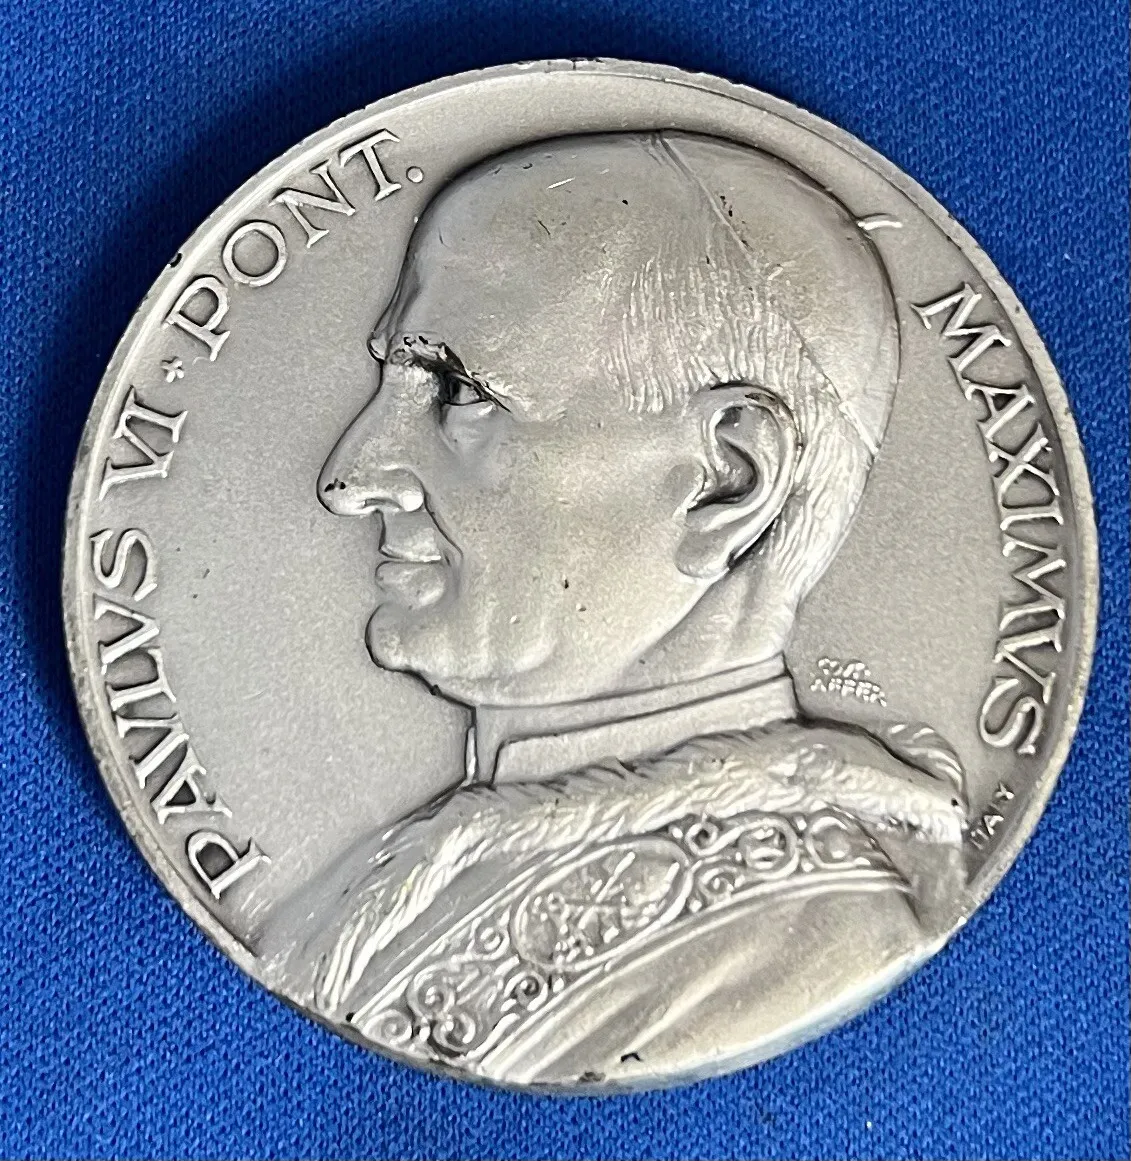 Paulus VI - Lire Città del Vaticano, Roma - Coins - World